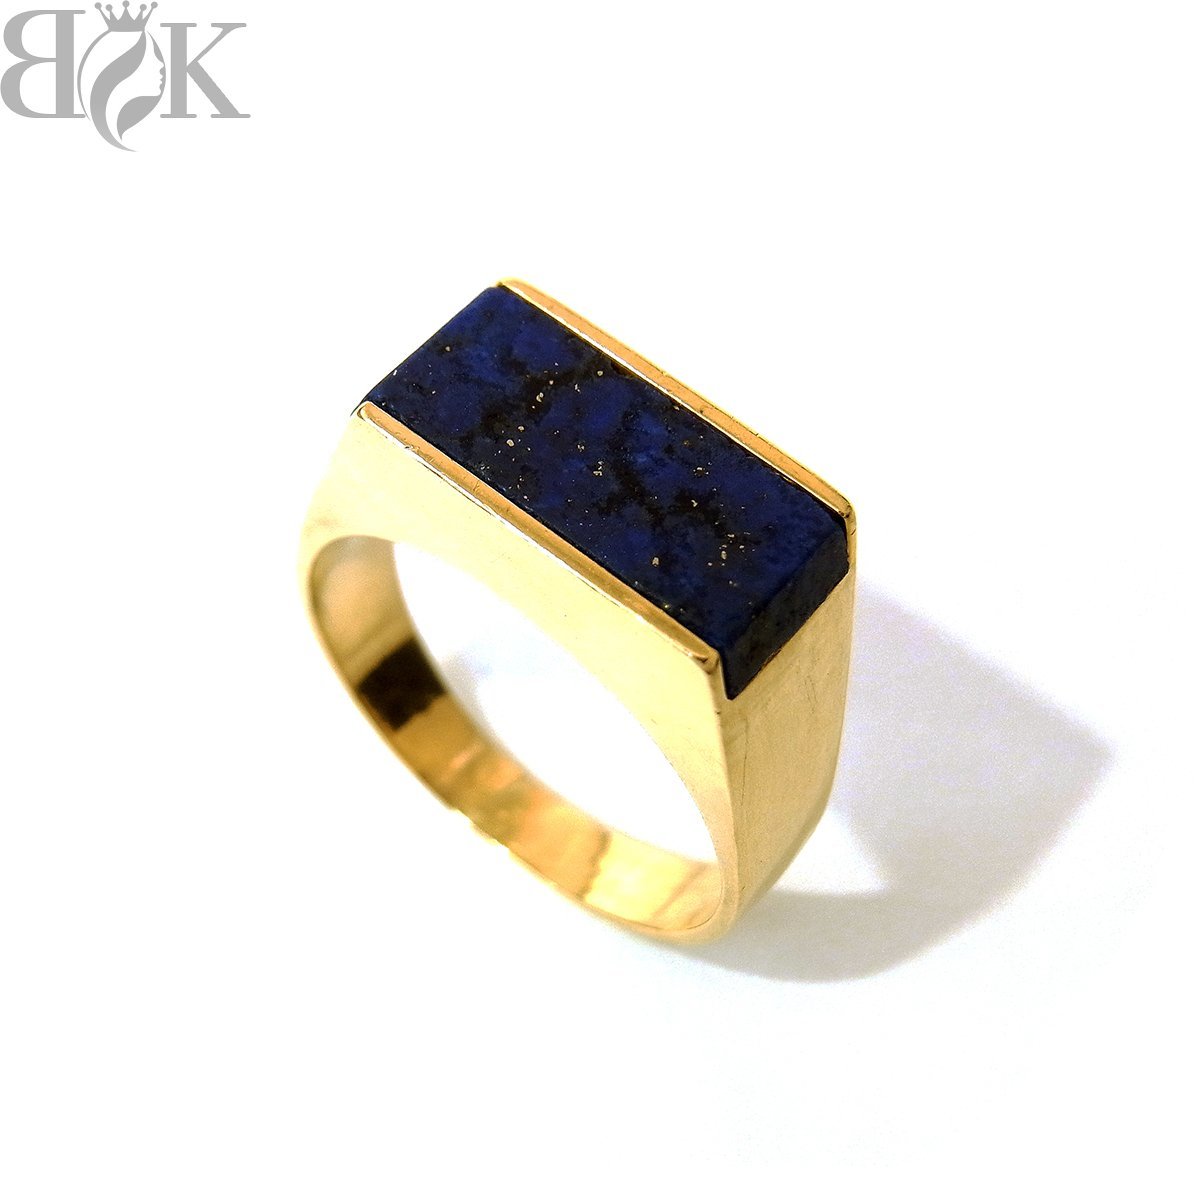 美品 K18 デザインリング 指輪 青色石 印台風 イエローゴールド 約17号 総重量約6.7g 超音波洗浄済み 〓